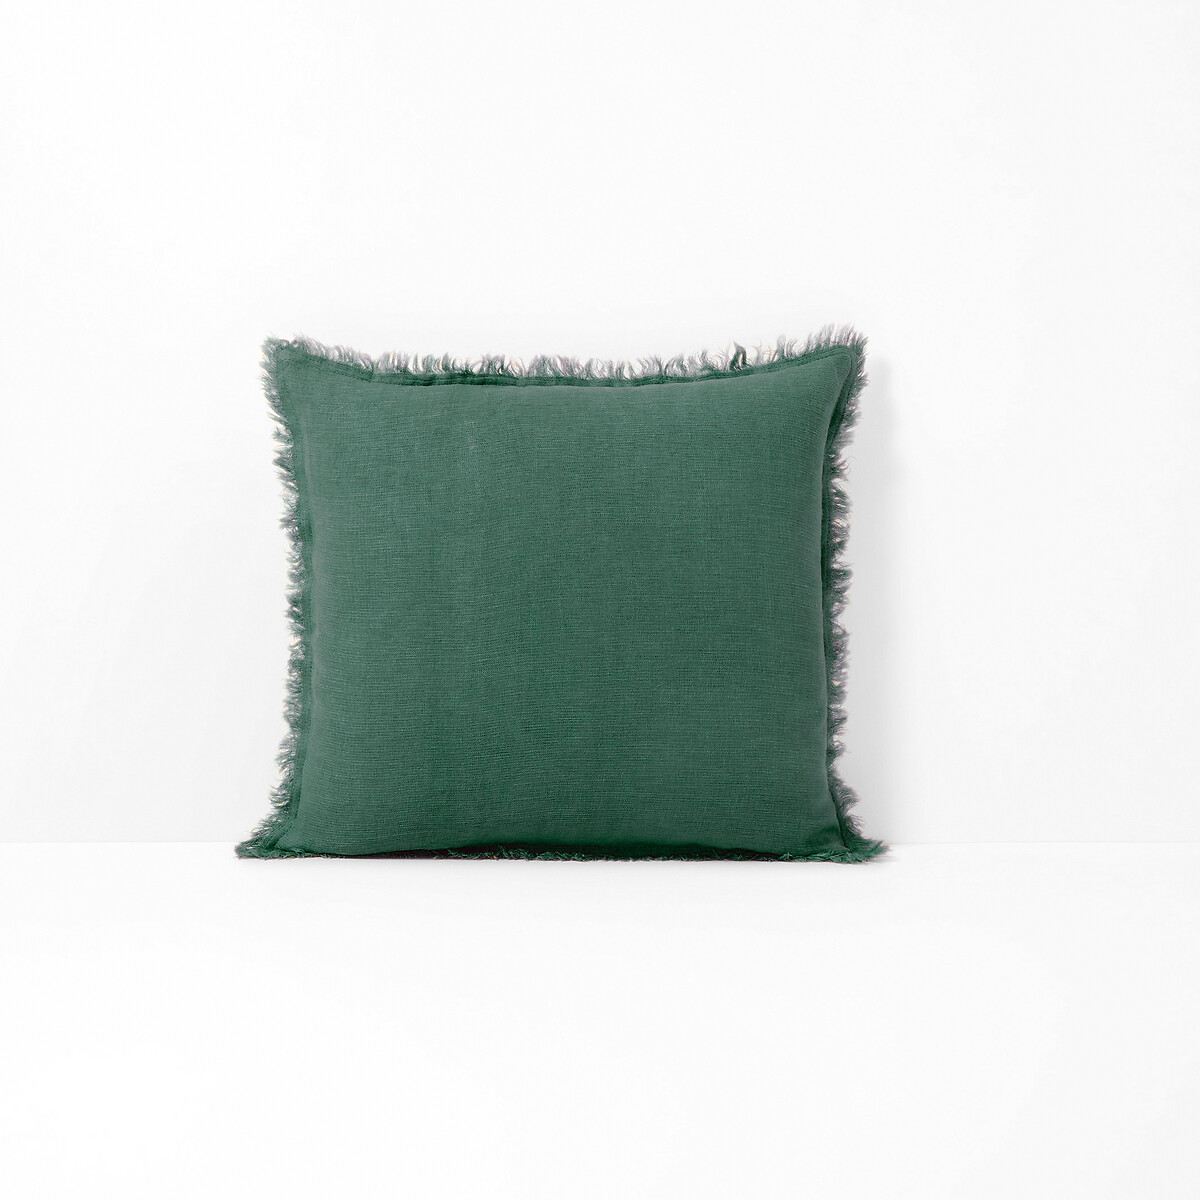 Чехол LaRedoute На подушку 100 лен Linange 50 x 50 см зеленый, размер 50 x 50 см - фото 2